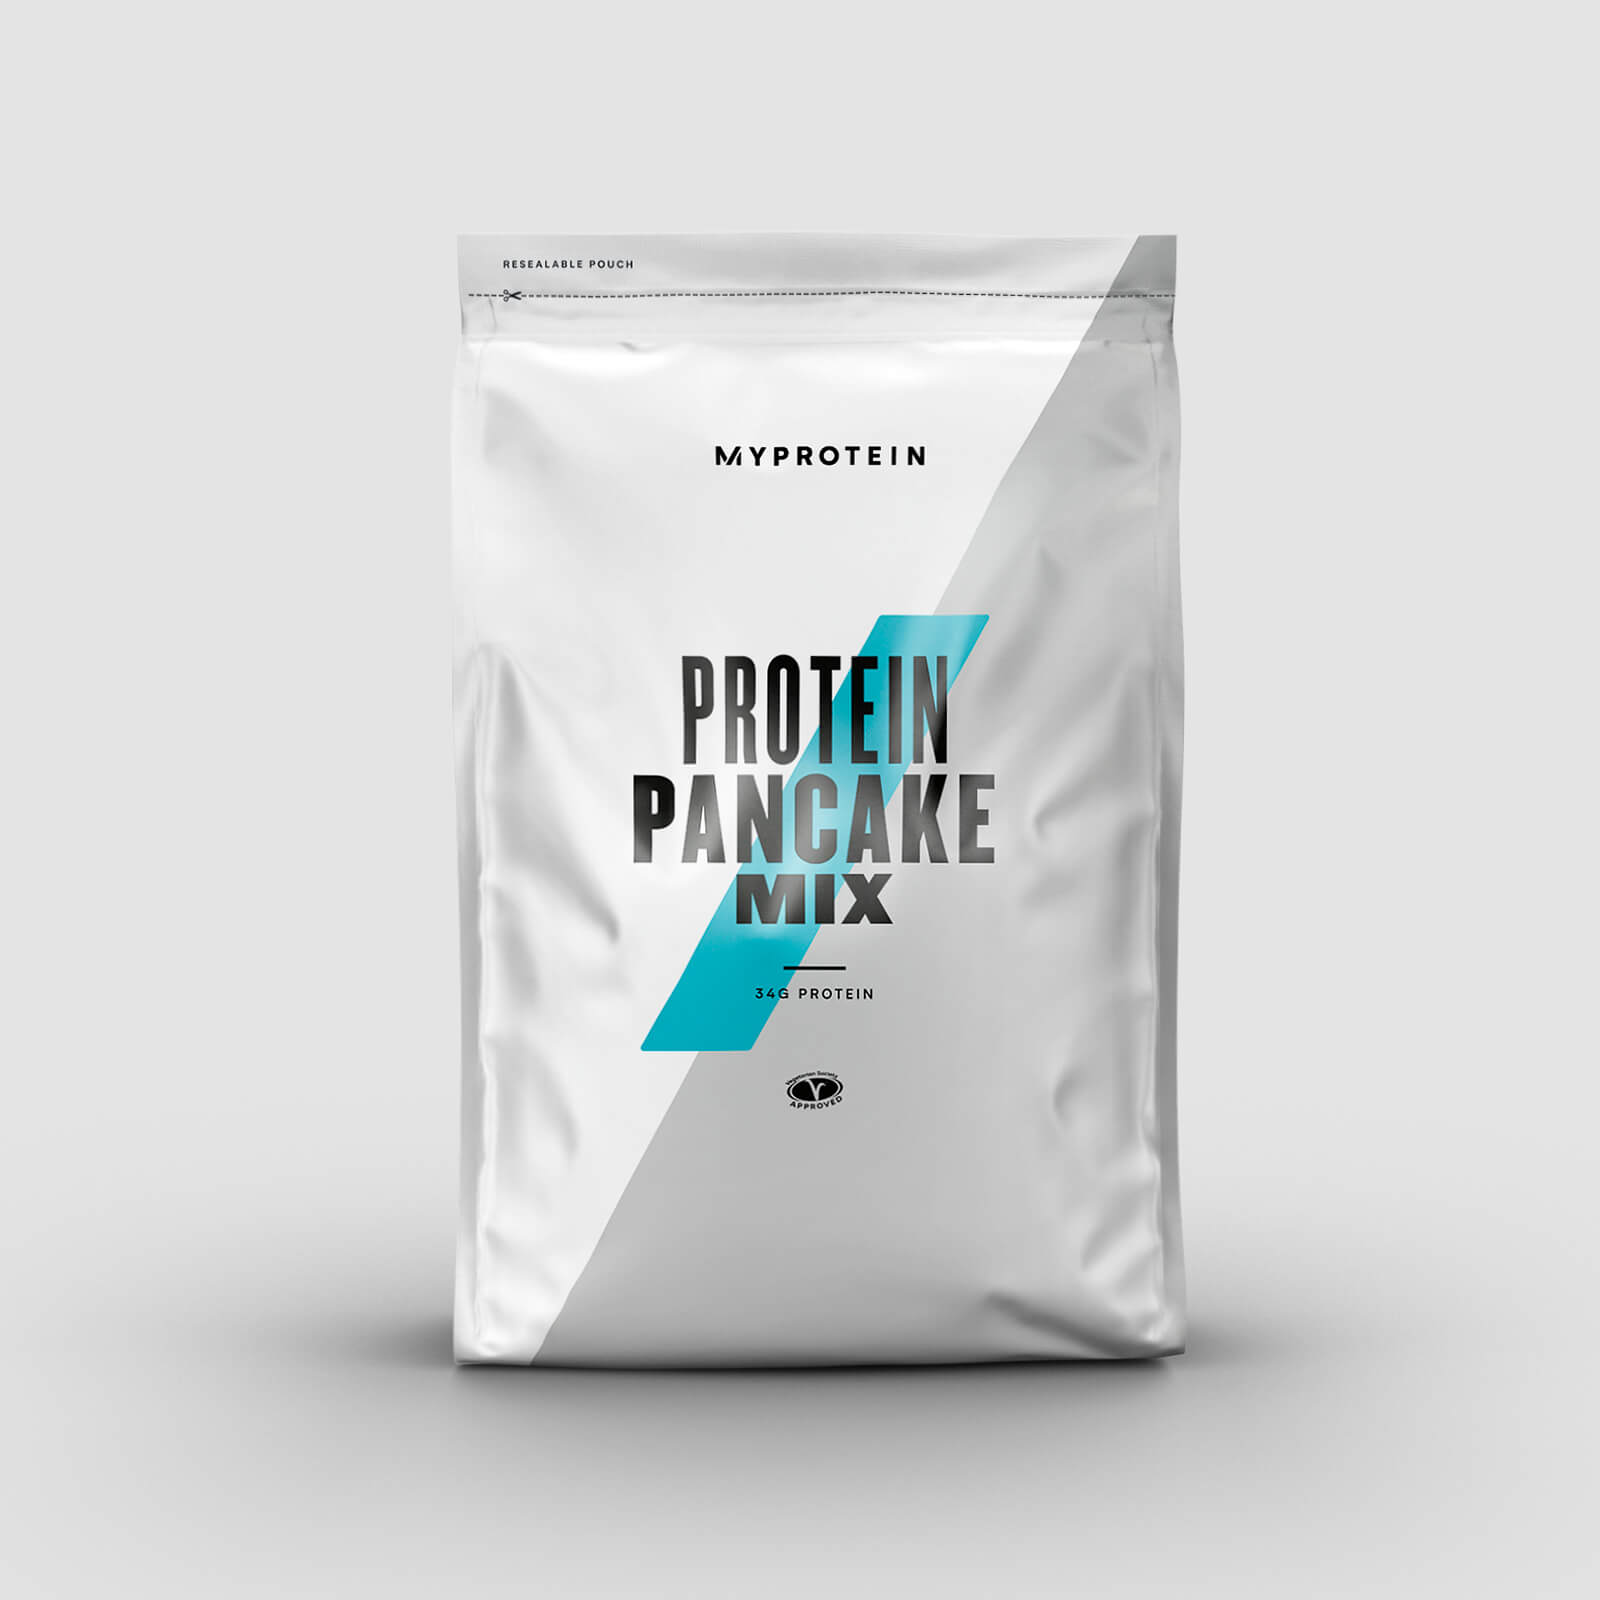 Myprotein Protein Pancake Mix - 200g - Chocolate